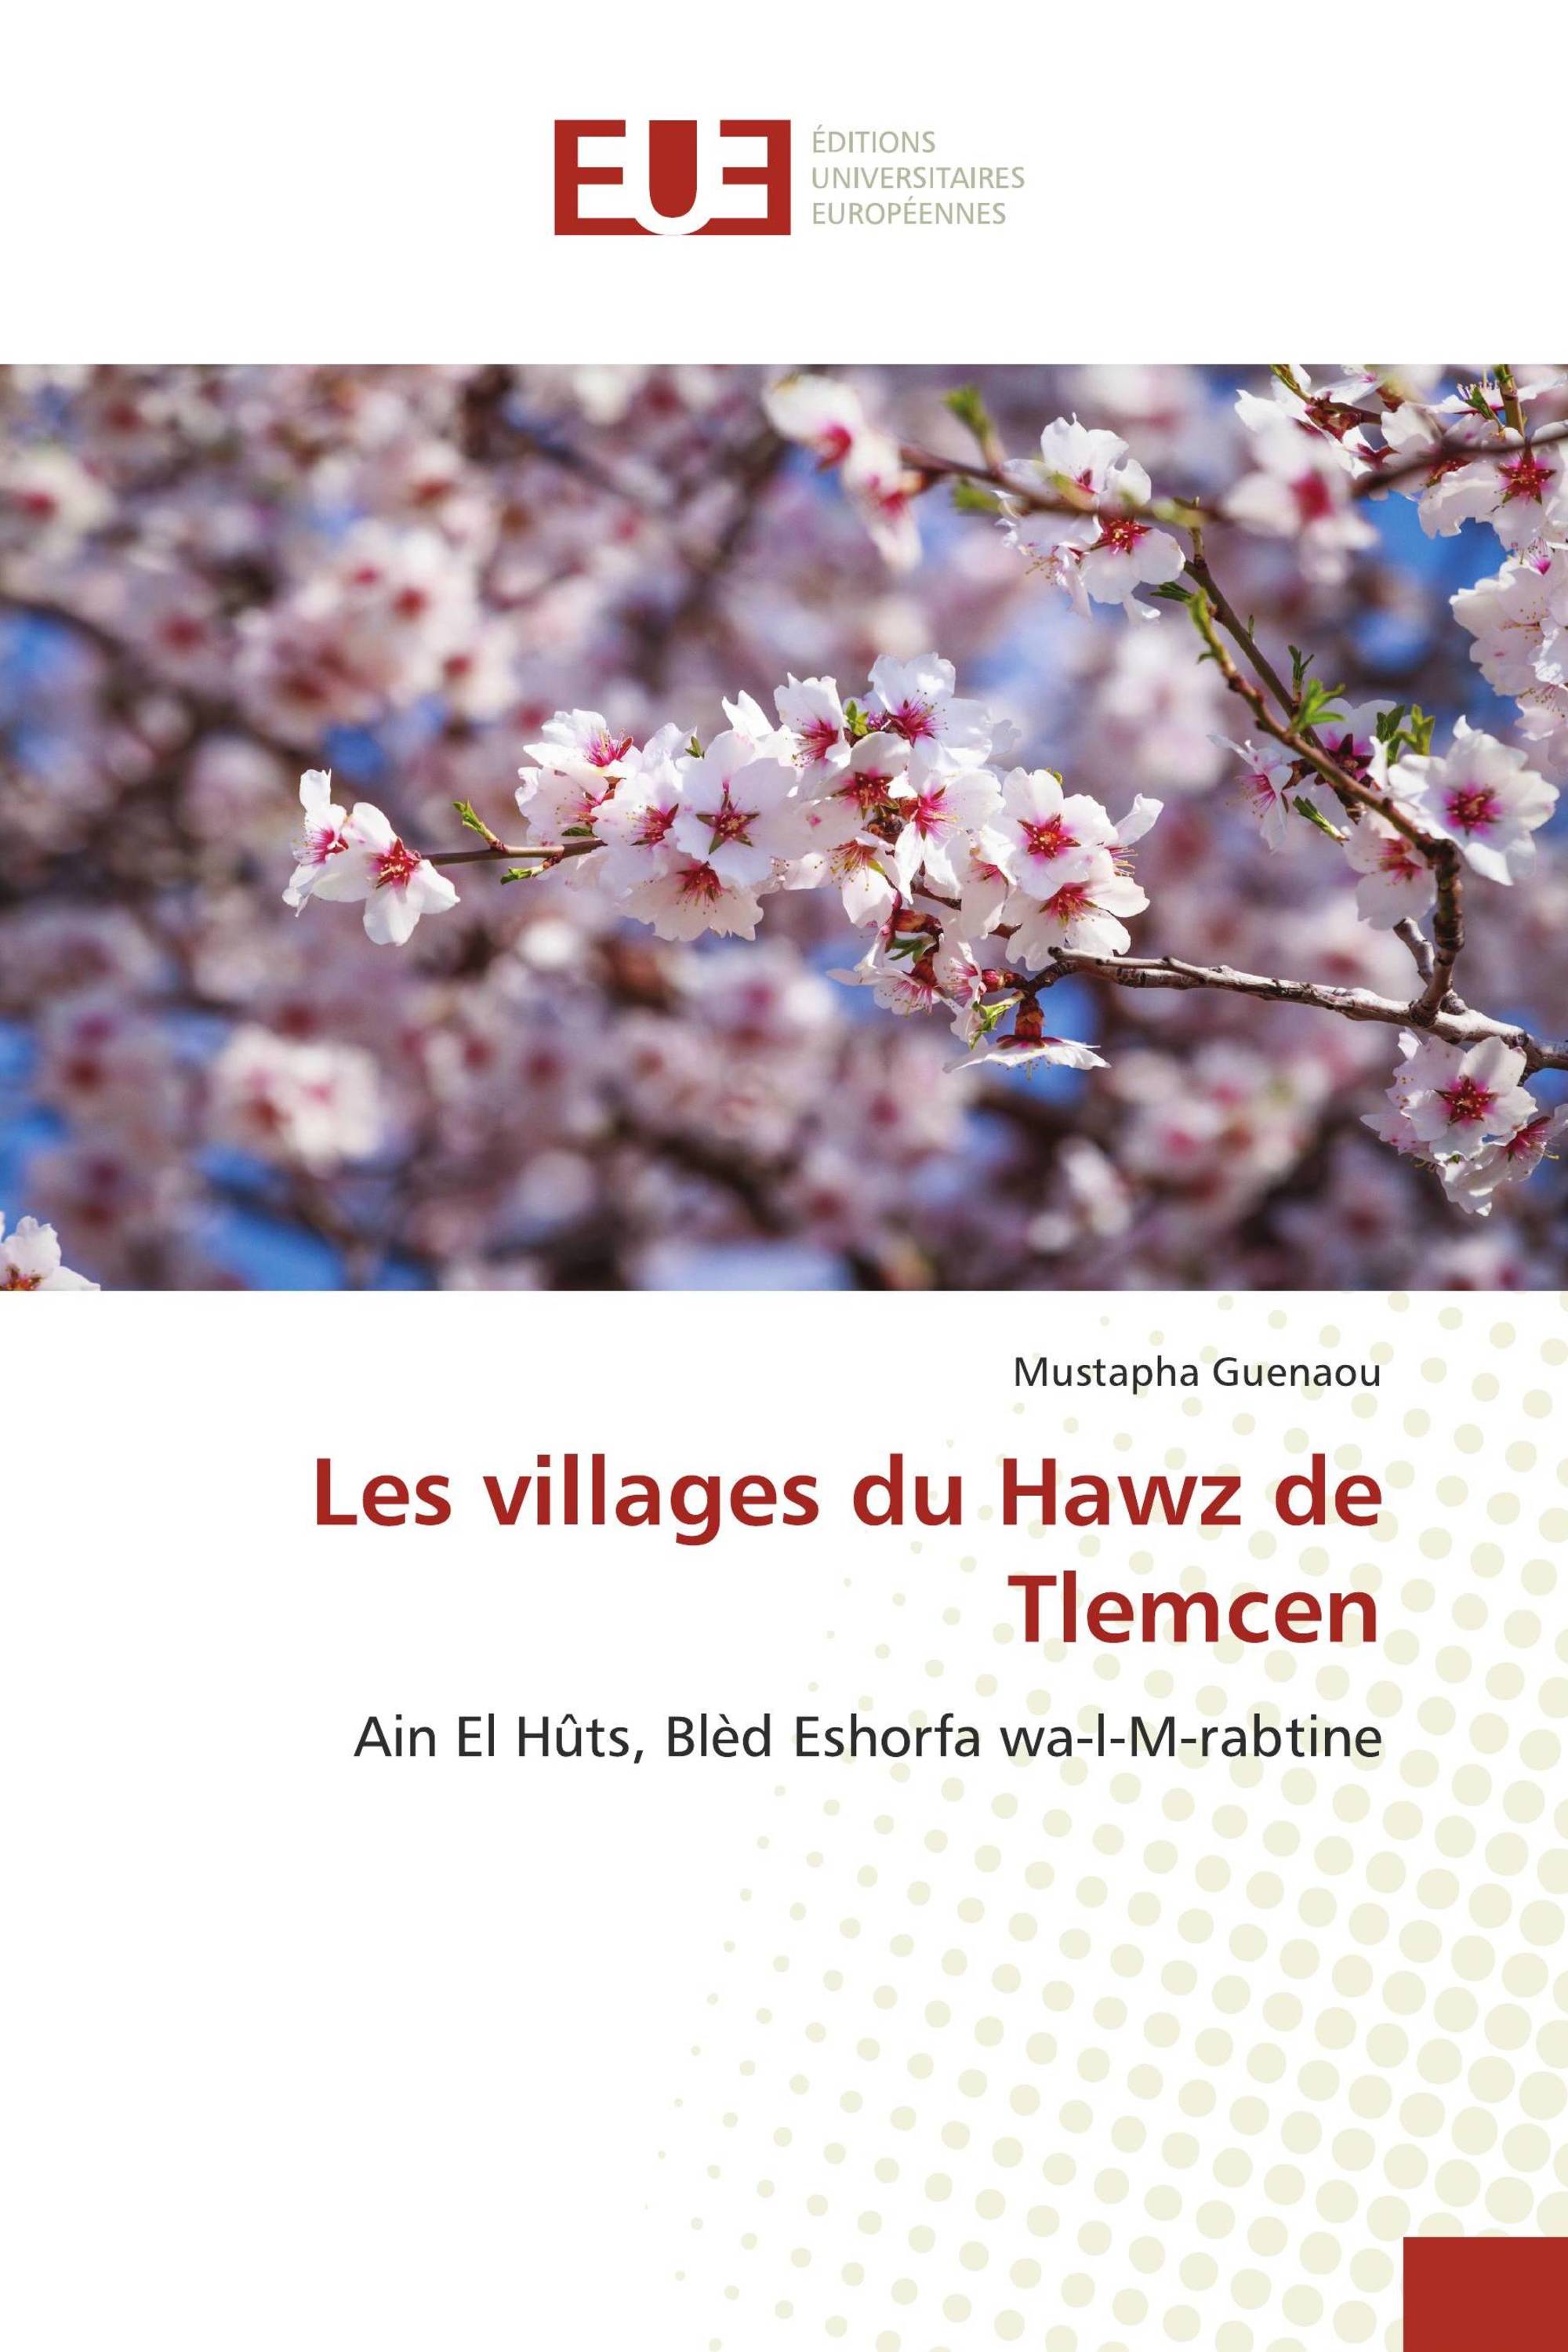 Les villages du Hawz de Tlemcen